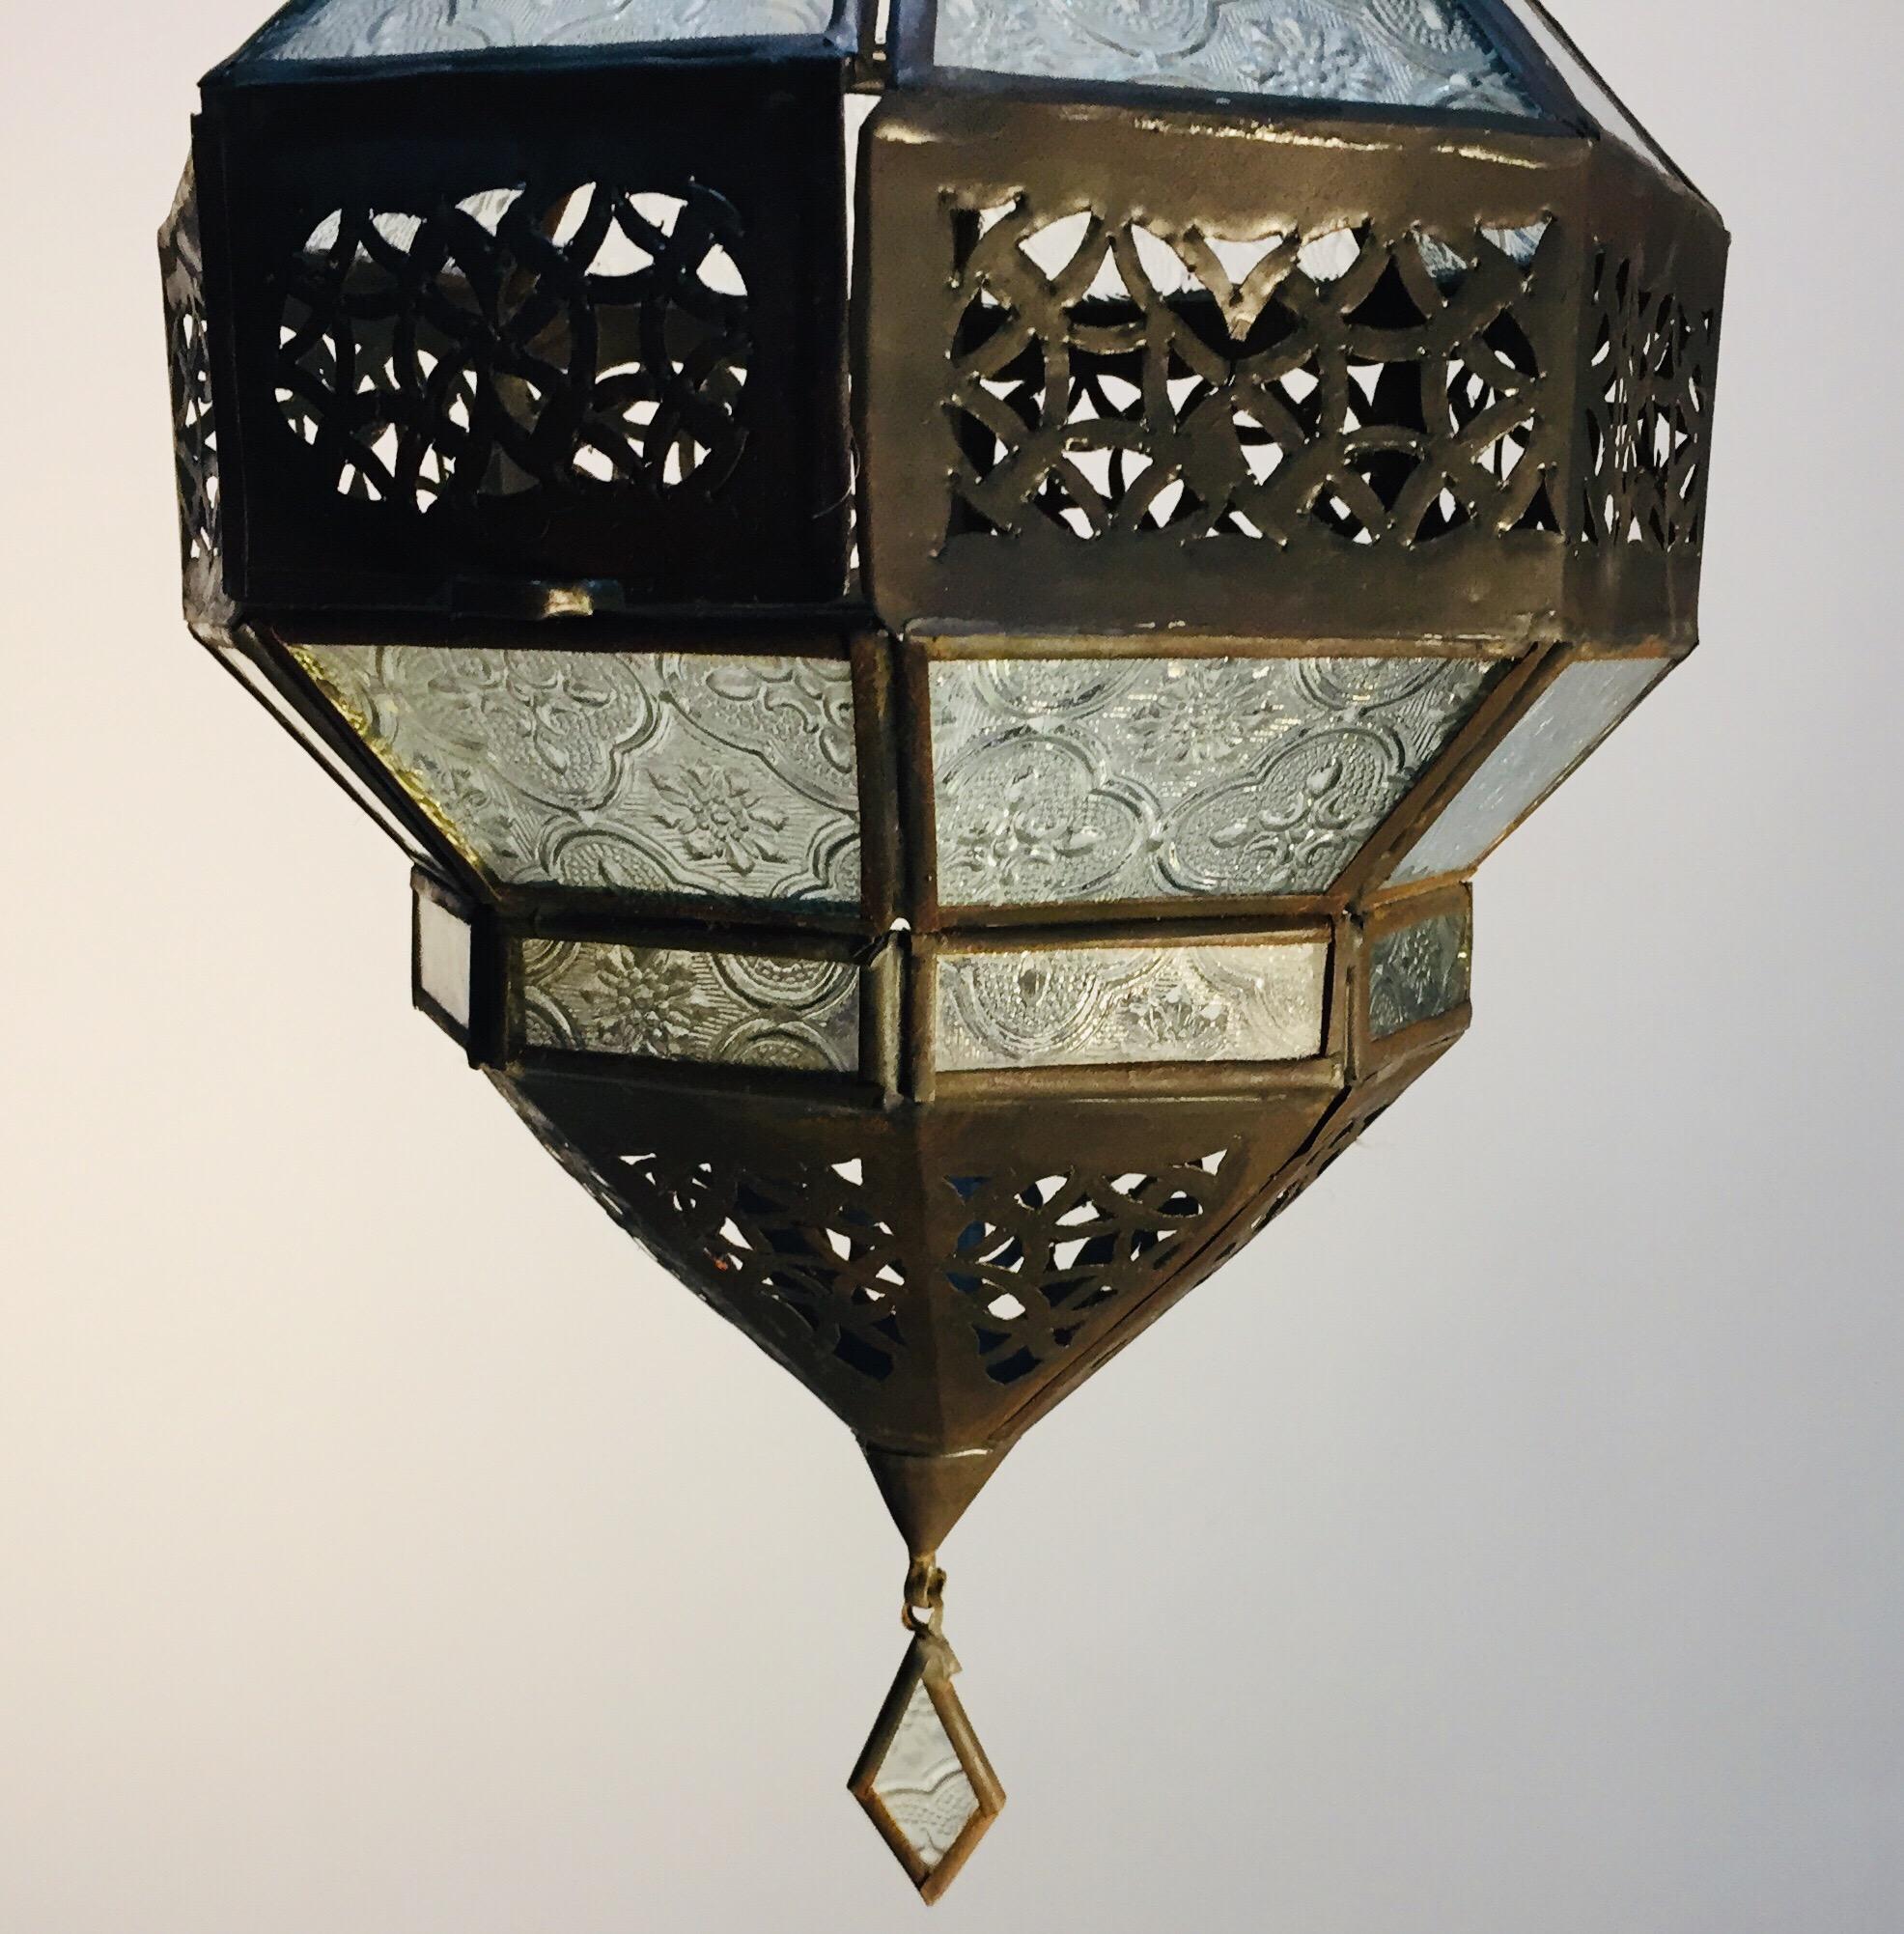 Marokkanische Metalllaterne, handgefertigt, achteckige Form mit klarem Glas 14